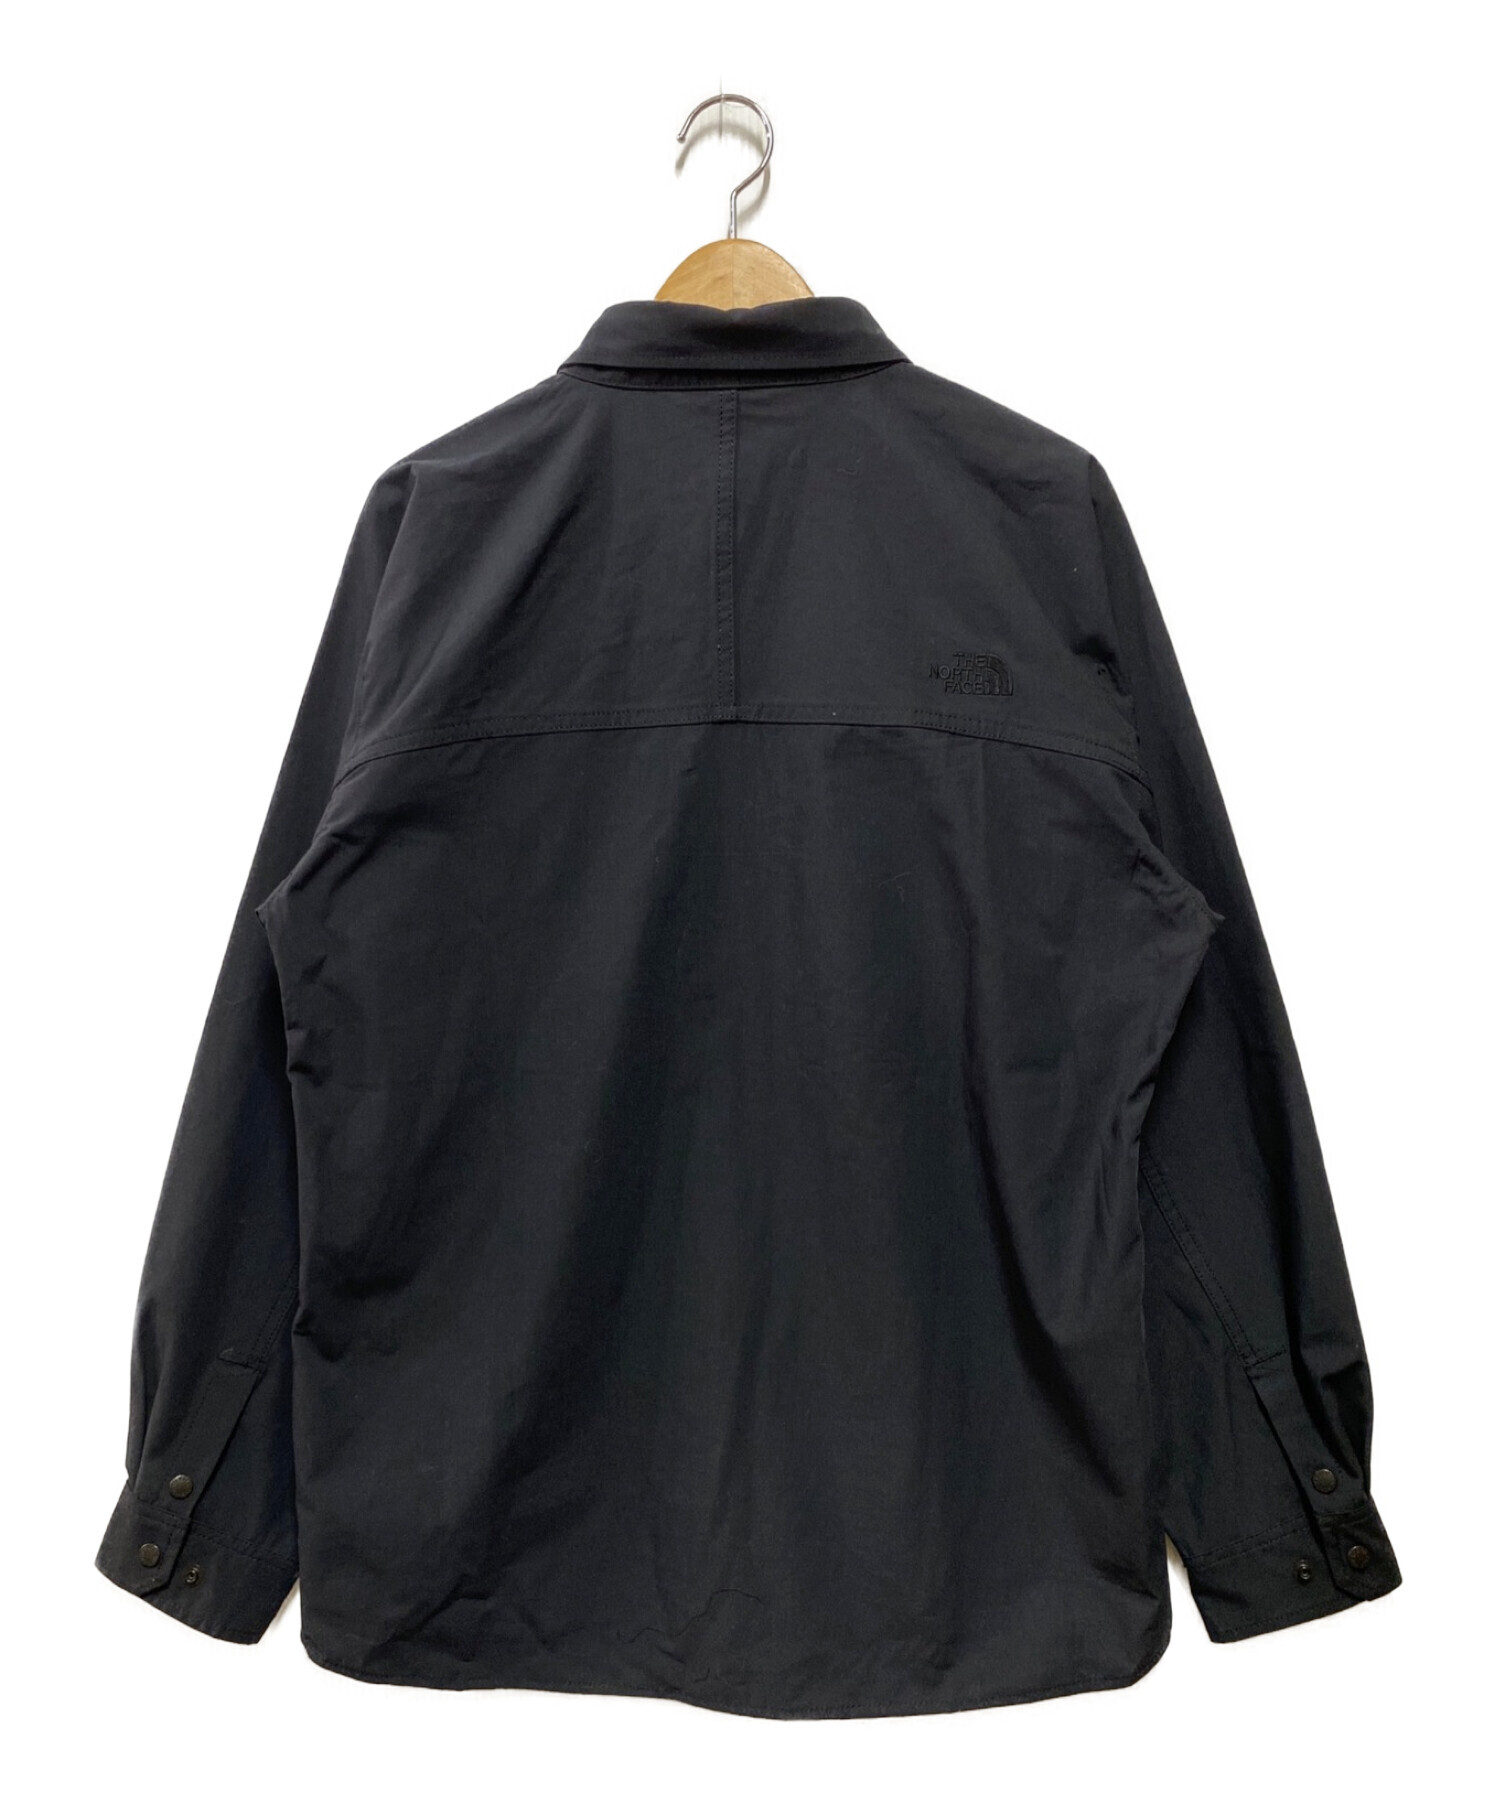 THE NORTH FACE (ザ ノース フェイス) Firefly Canopy Shirt ブラック サイズ:L